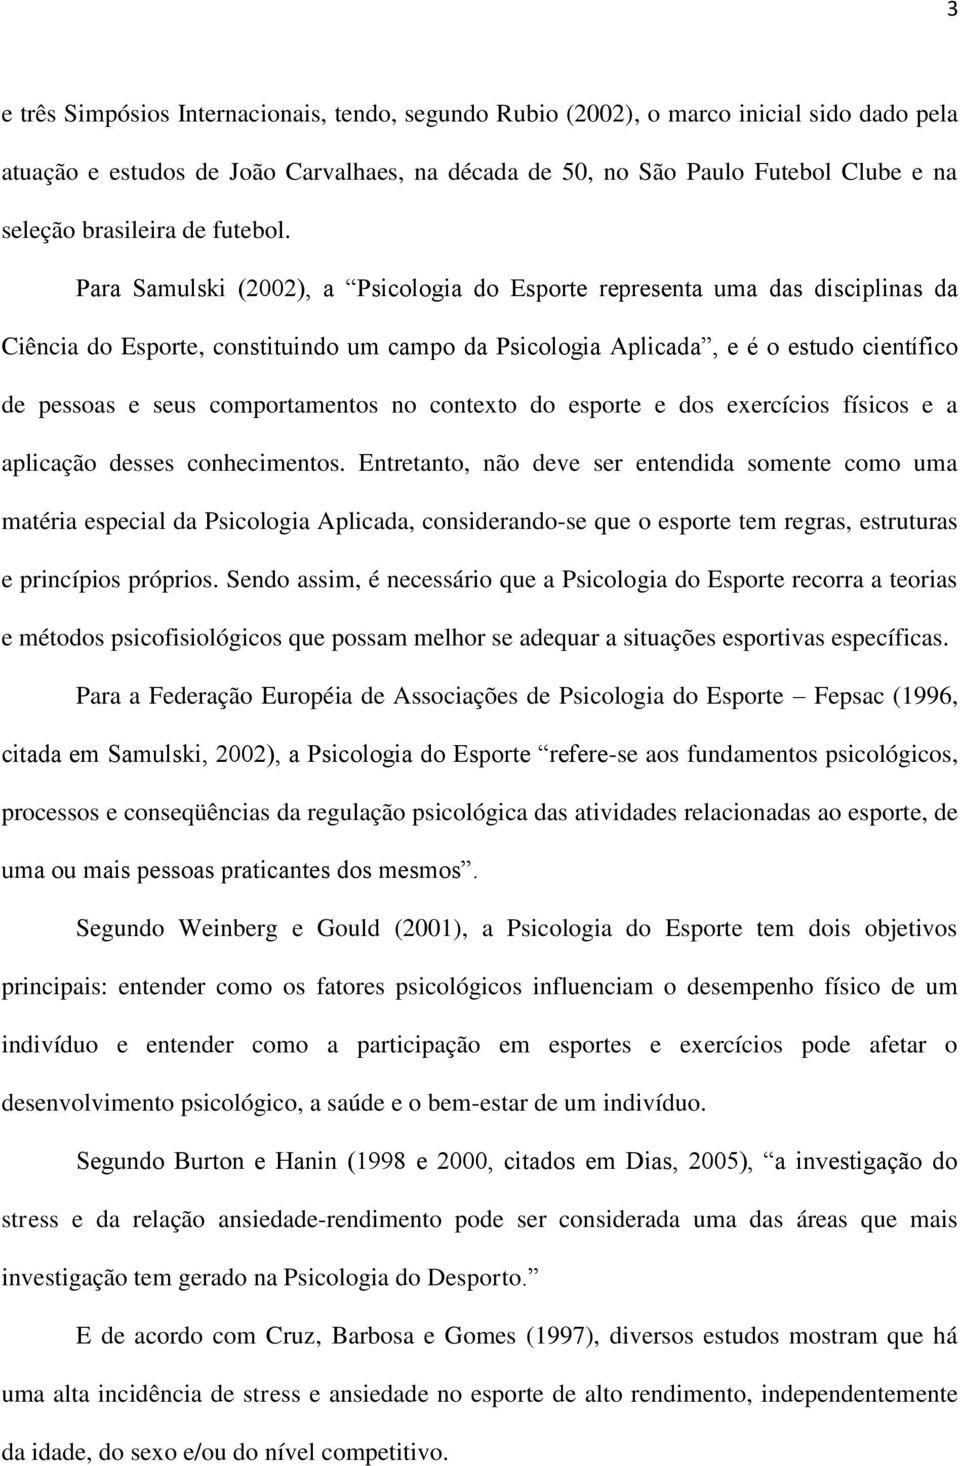 Para Samulski (2002), a Psicologia do Esporte representa uma das disciplinas da Ciência do Esporte, constituindo um campo da Psicologia Aplicada, e é o estudo científico de pessoas e seus